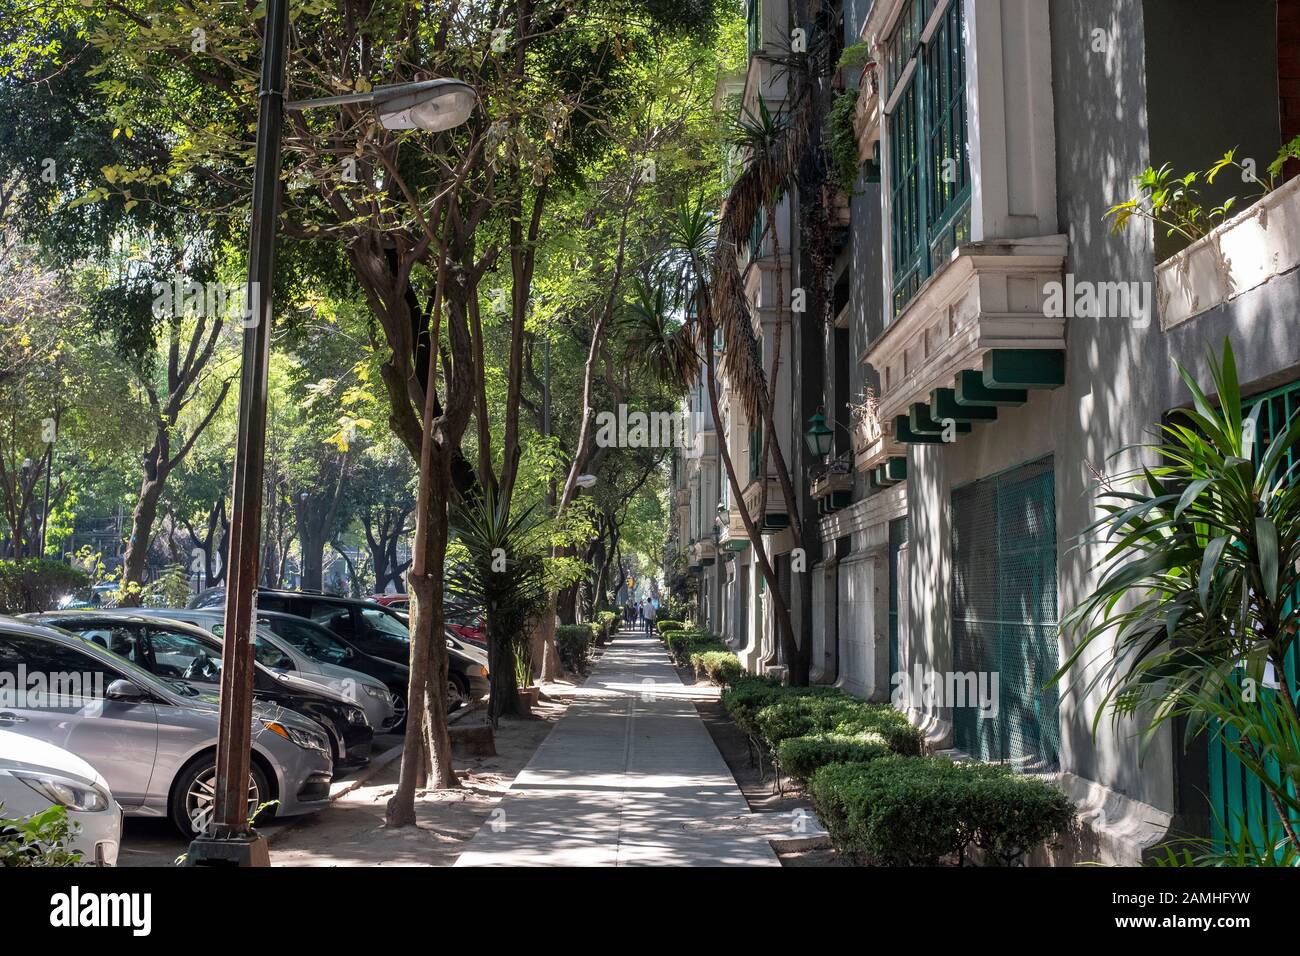 Street scene, La Condesa. Stock Photo